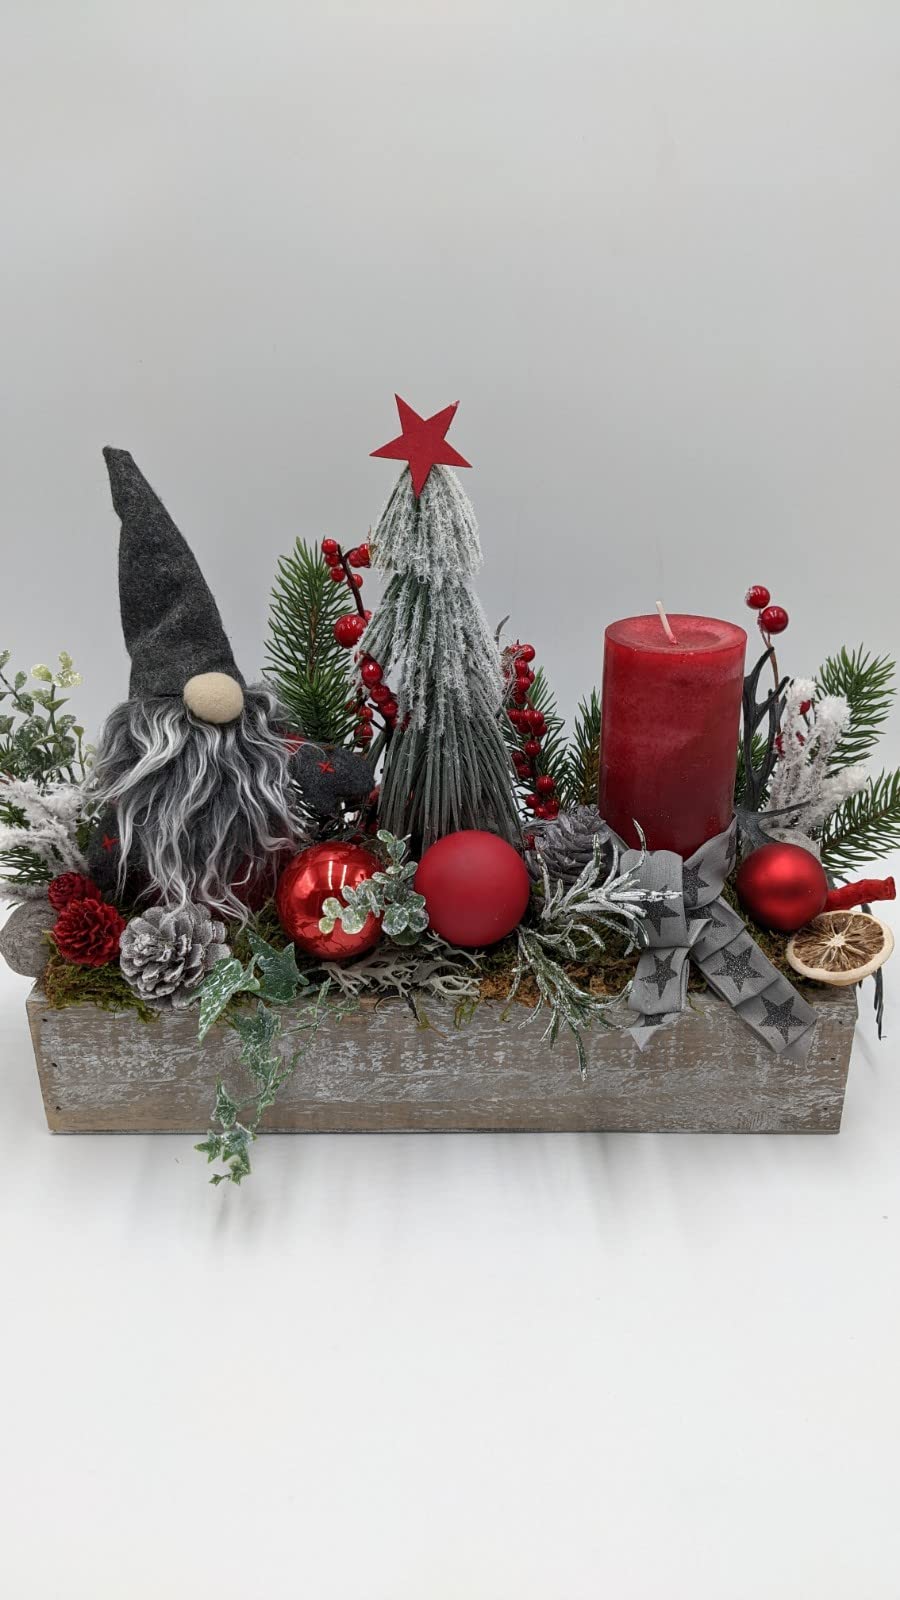 Weihnachtsgesteck Adventsgesteck Tischgesteck Schleife Kugel Zapfen Stern Kerze Wichtel Tannenbäumchen Beeren Tanne rot grau